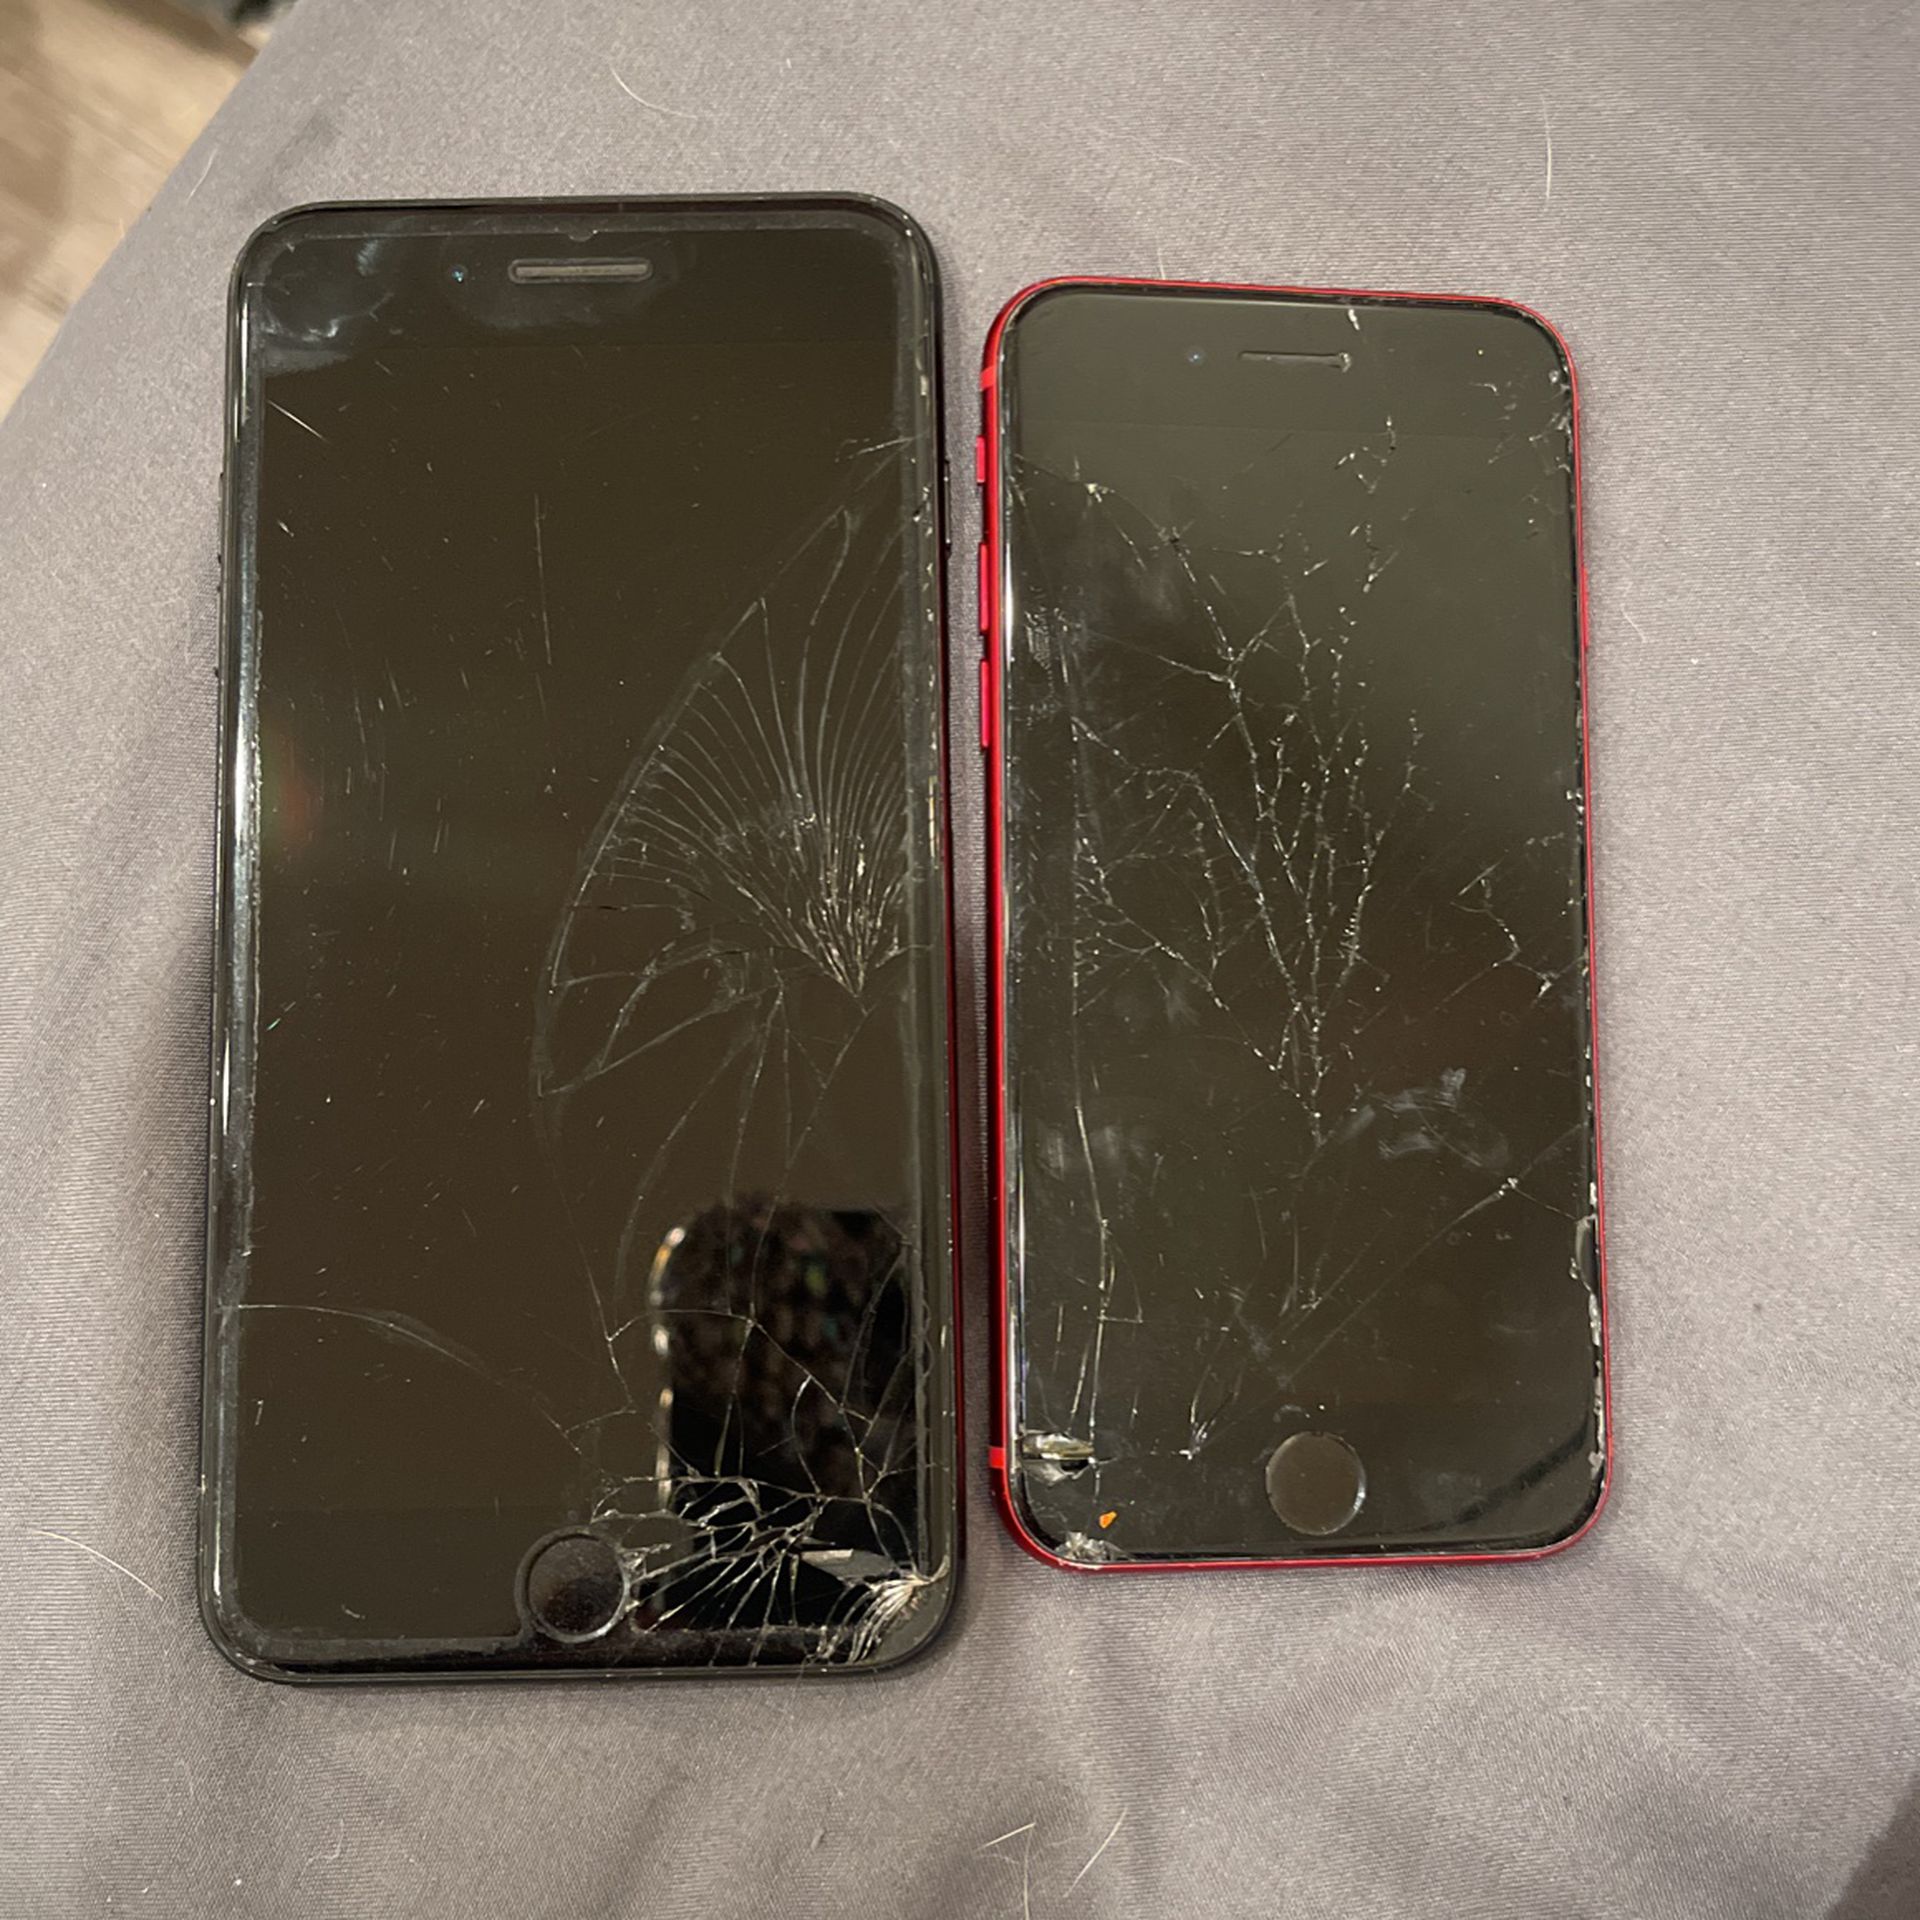 Broken screen iphone se 3rd gen and iphone 7 plus